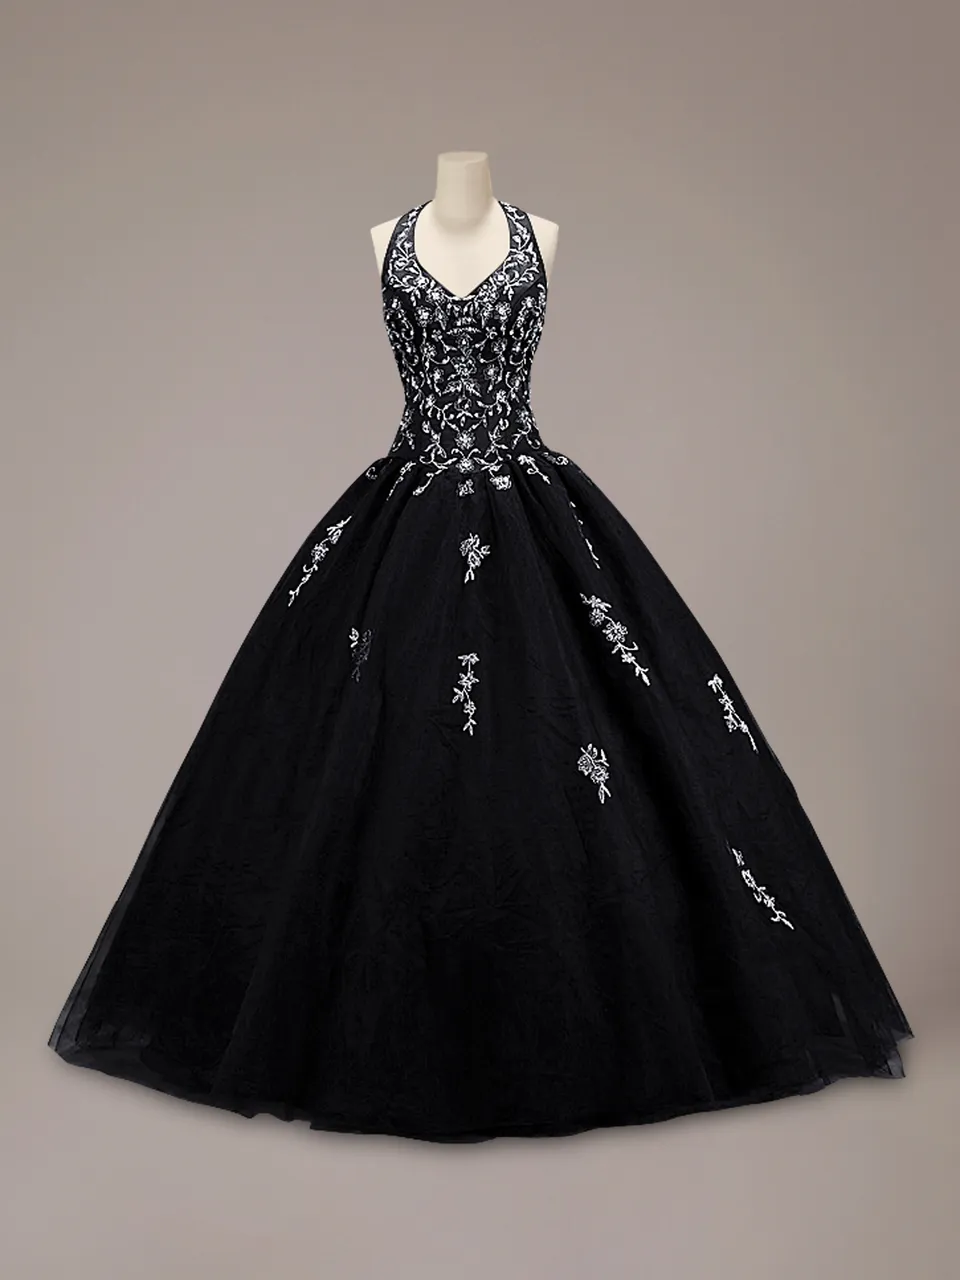 Vintage kolorowa czarna suknia balowa gotycka suknia ślubna halter tiulowa spódnica srebrny haft długość podłogi nie białe suknie ślubne Couture